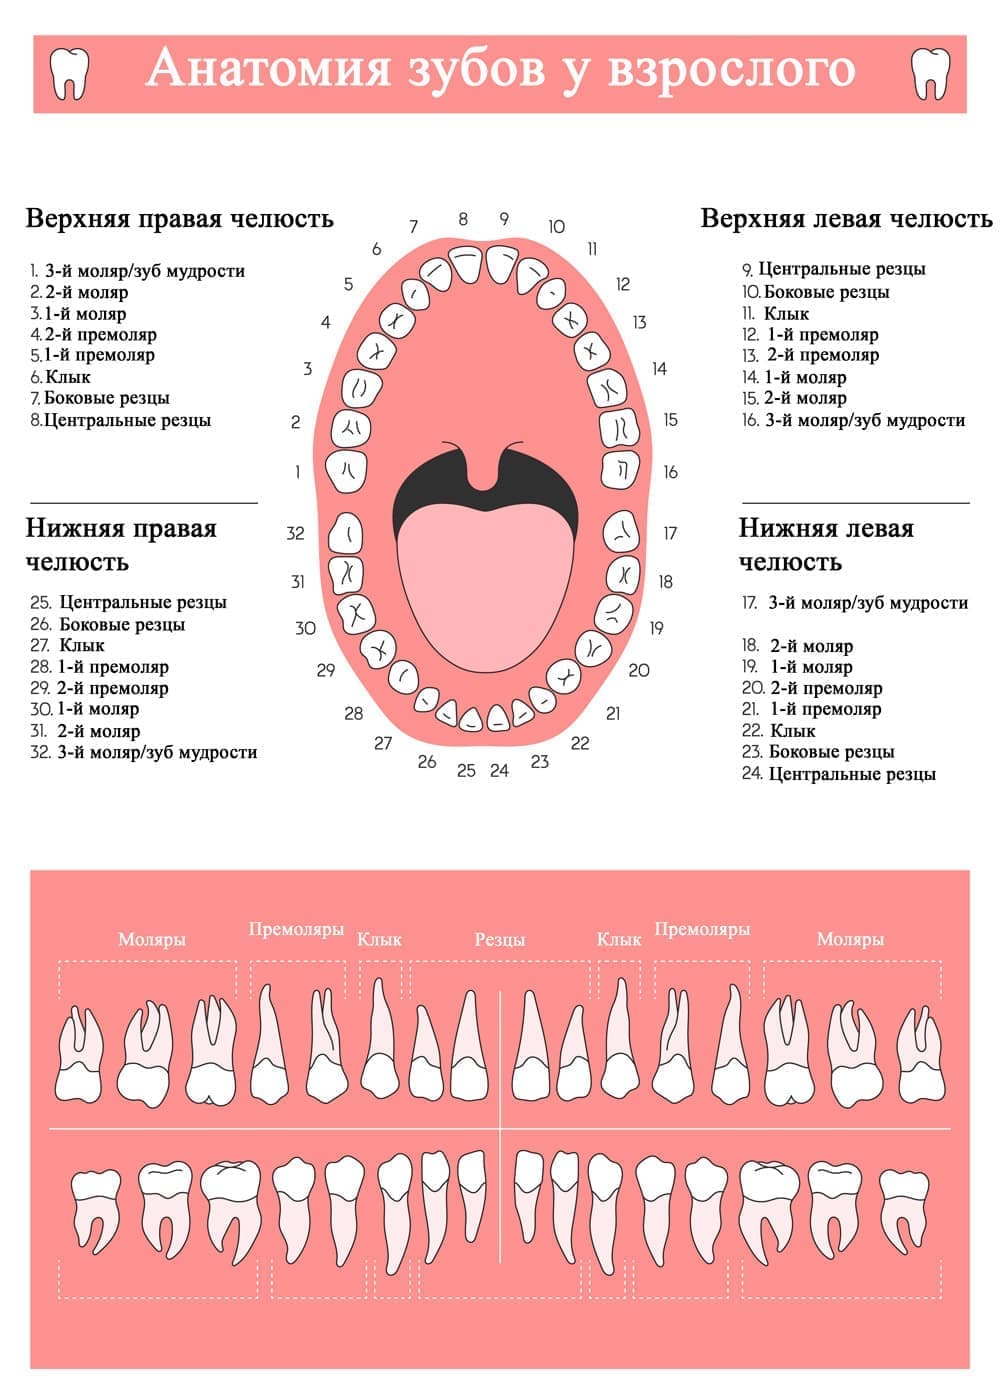 зубы по номерам в стоматологии